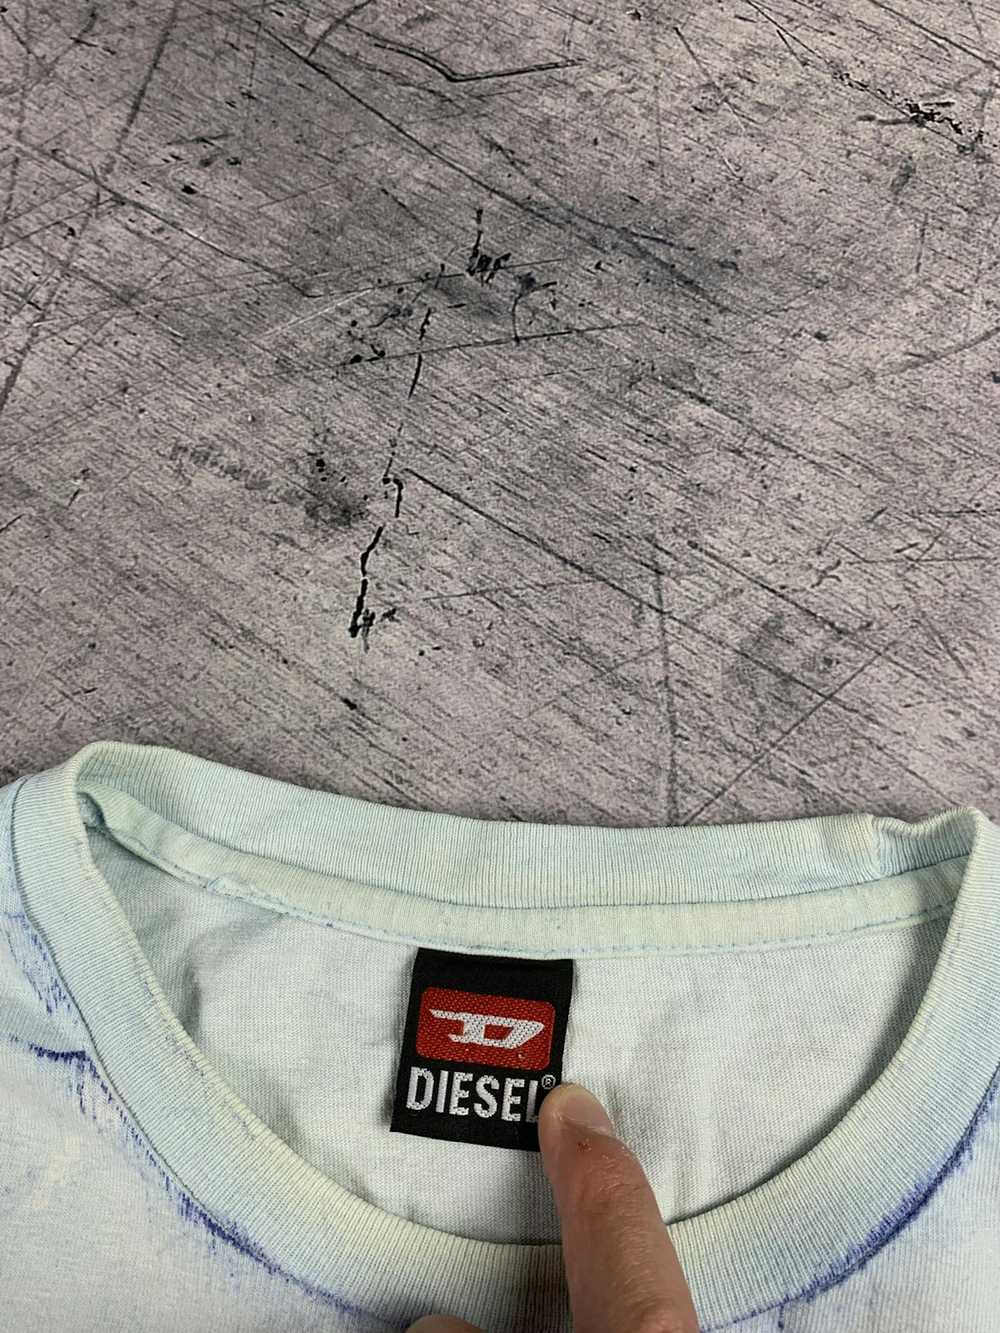 Diesel × Hype × Vintage Vintage 90s Diesel T-Shir… - image 5